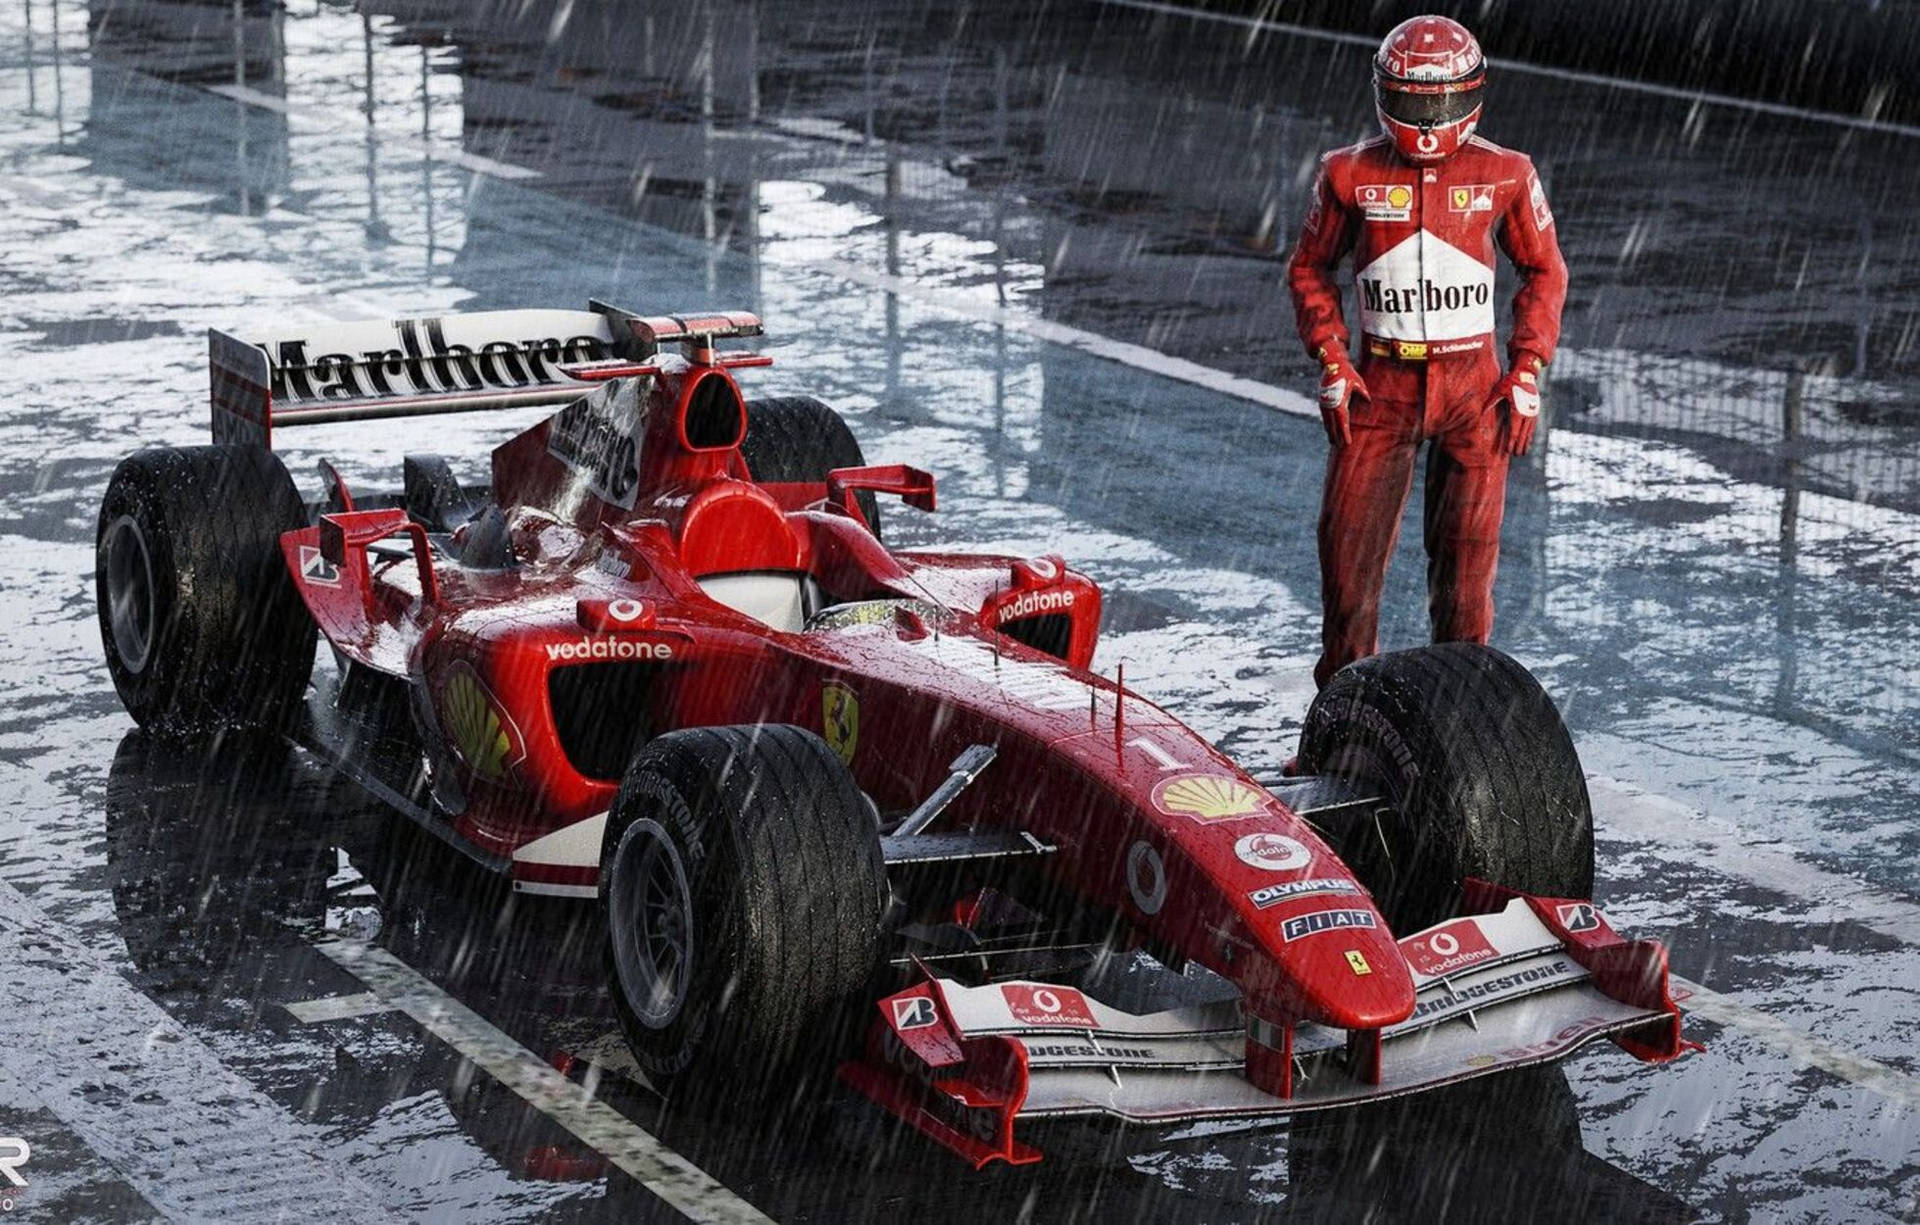 Ferrari Legend Michael Schumacher